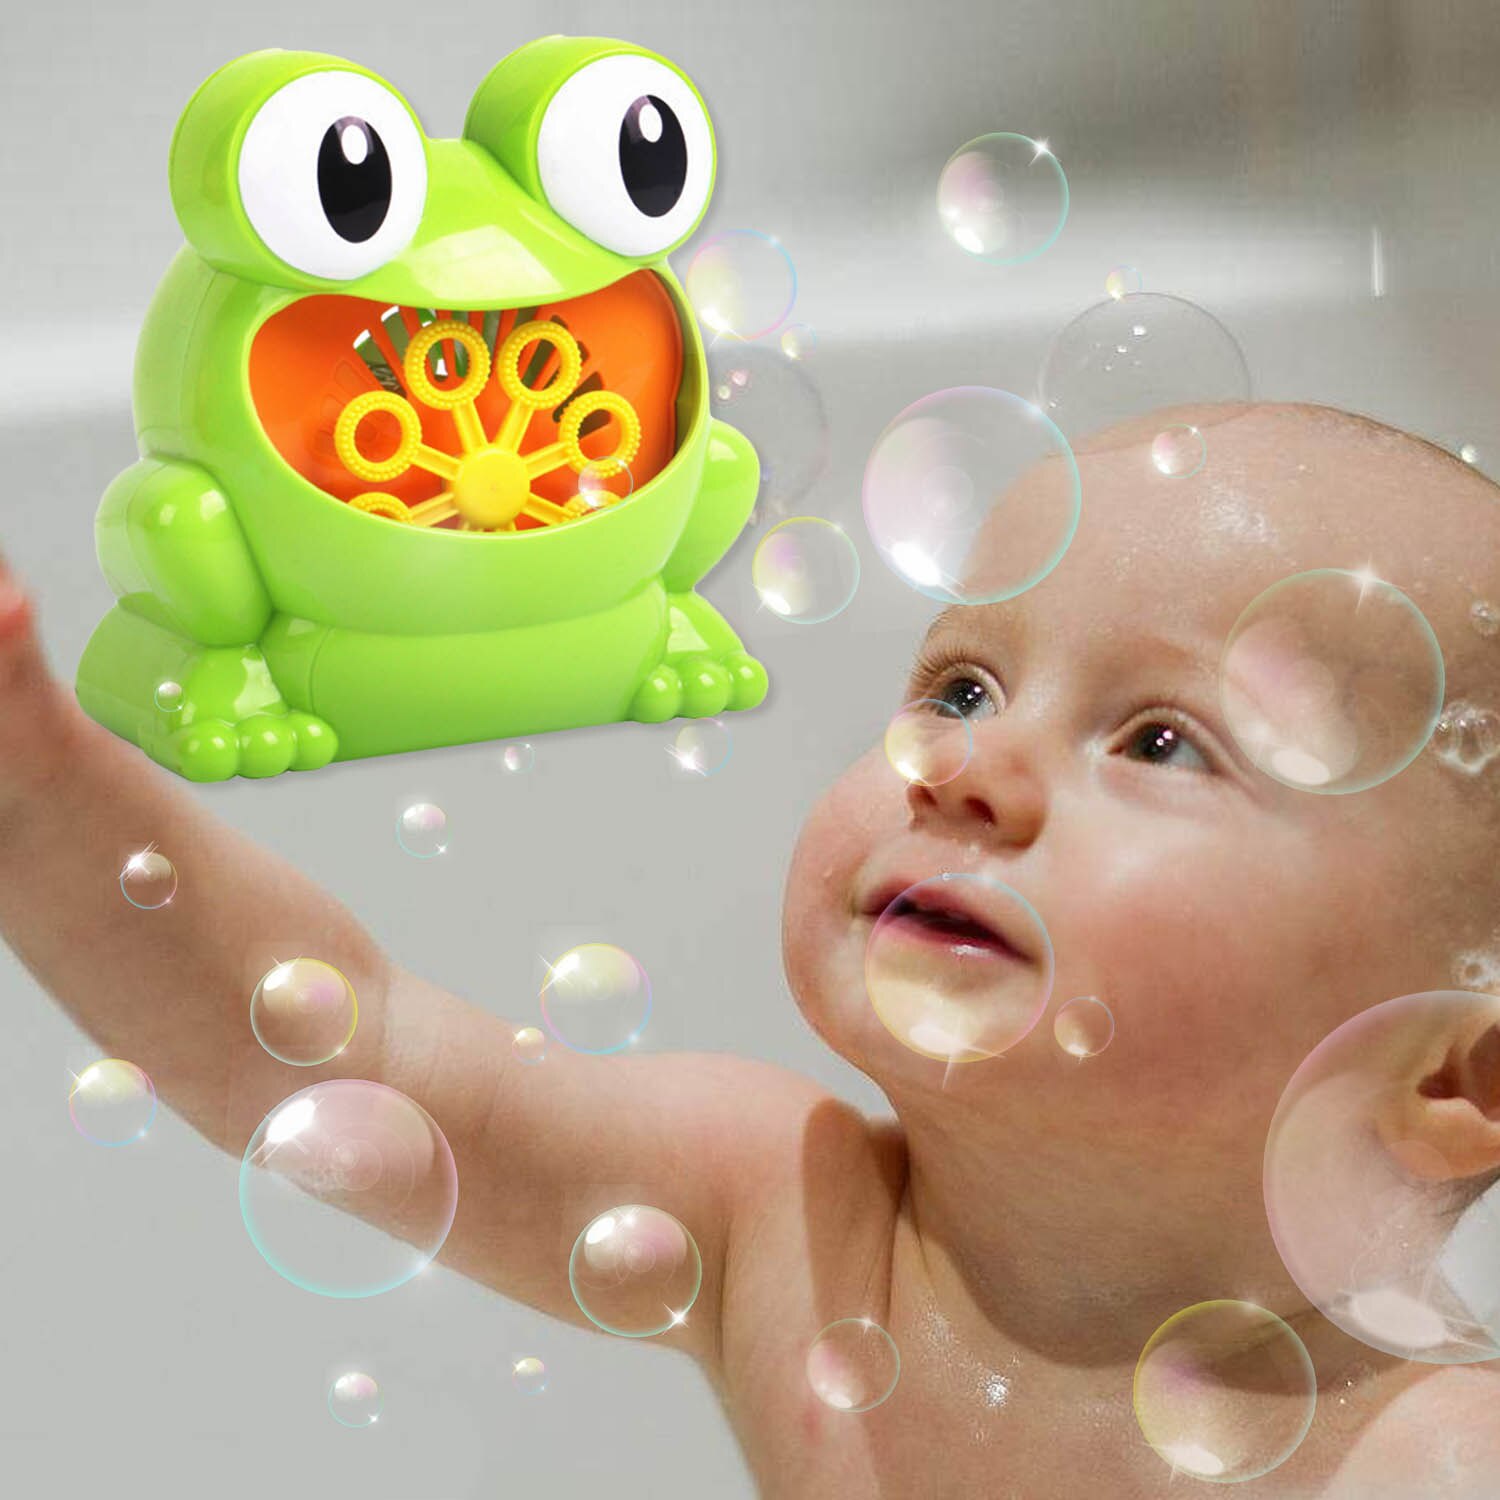 Børn sød sjov automatisk frøboble maskine elektrisk boble maker sæbe blæser boble blæser legetøj batteridrevet ourtoor legetøj